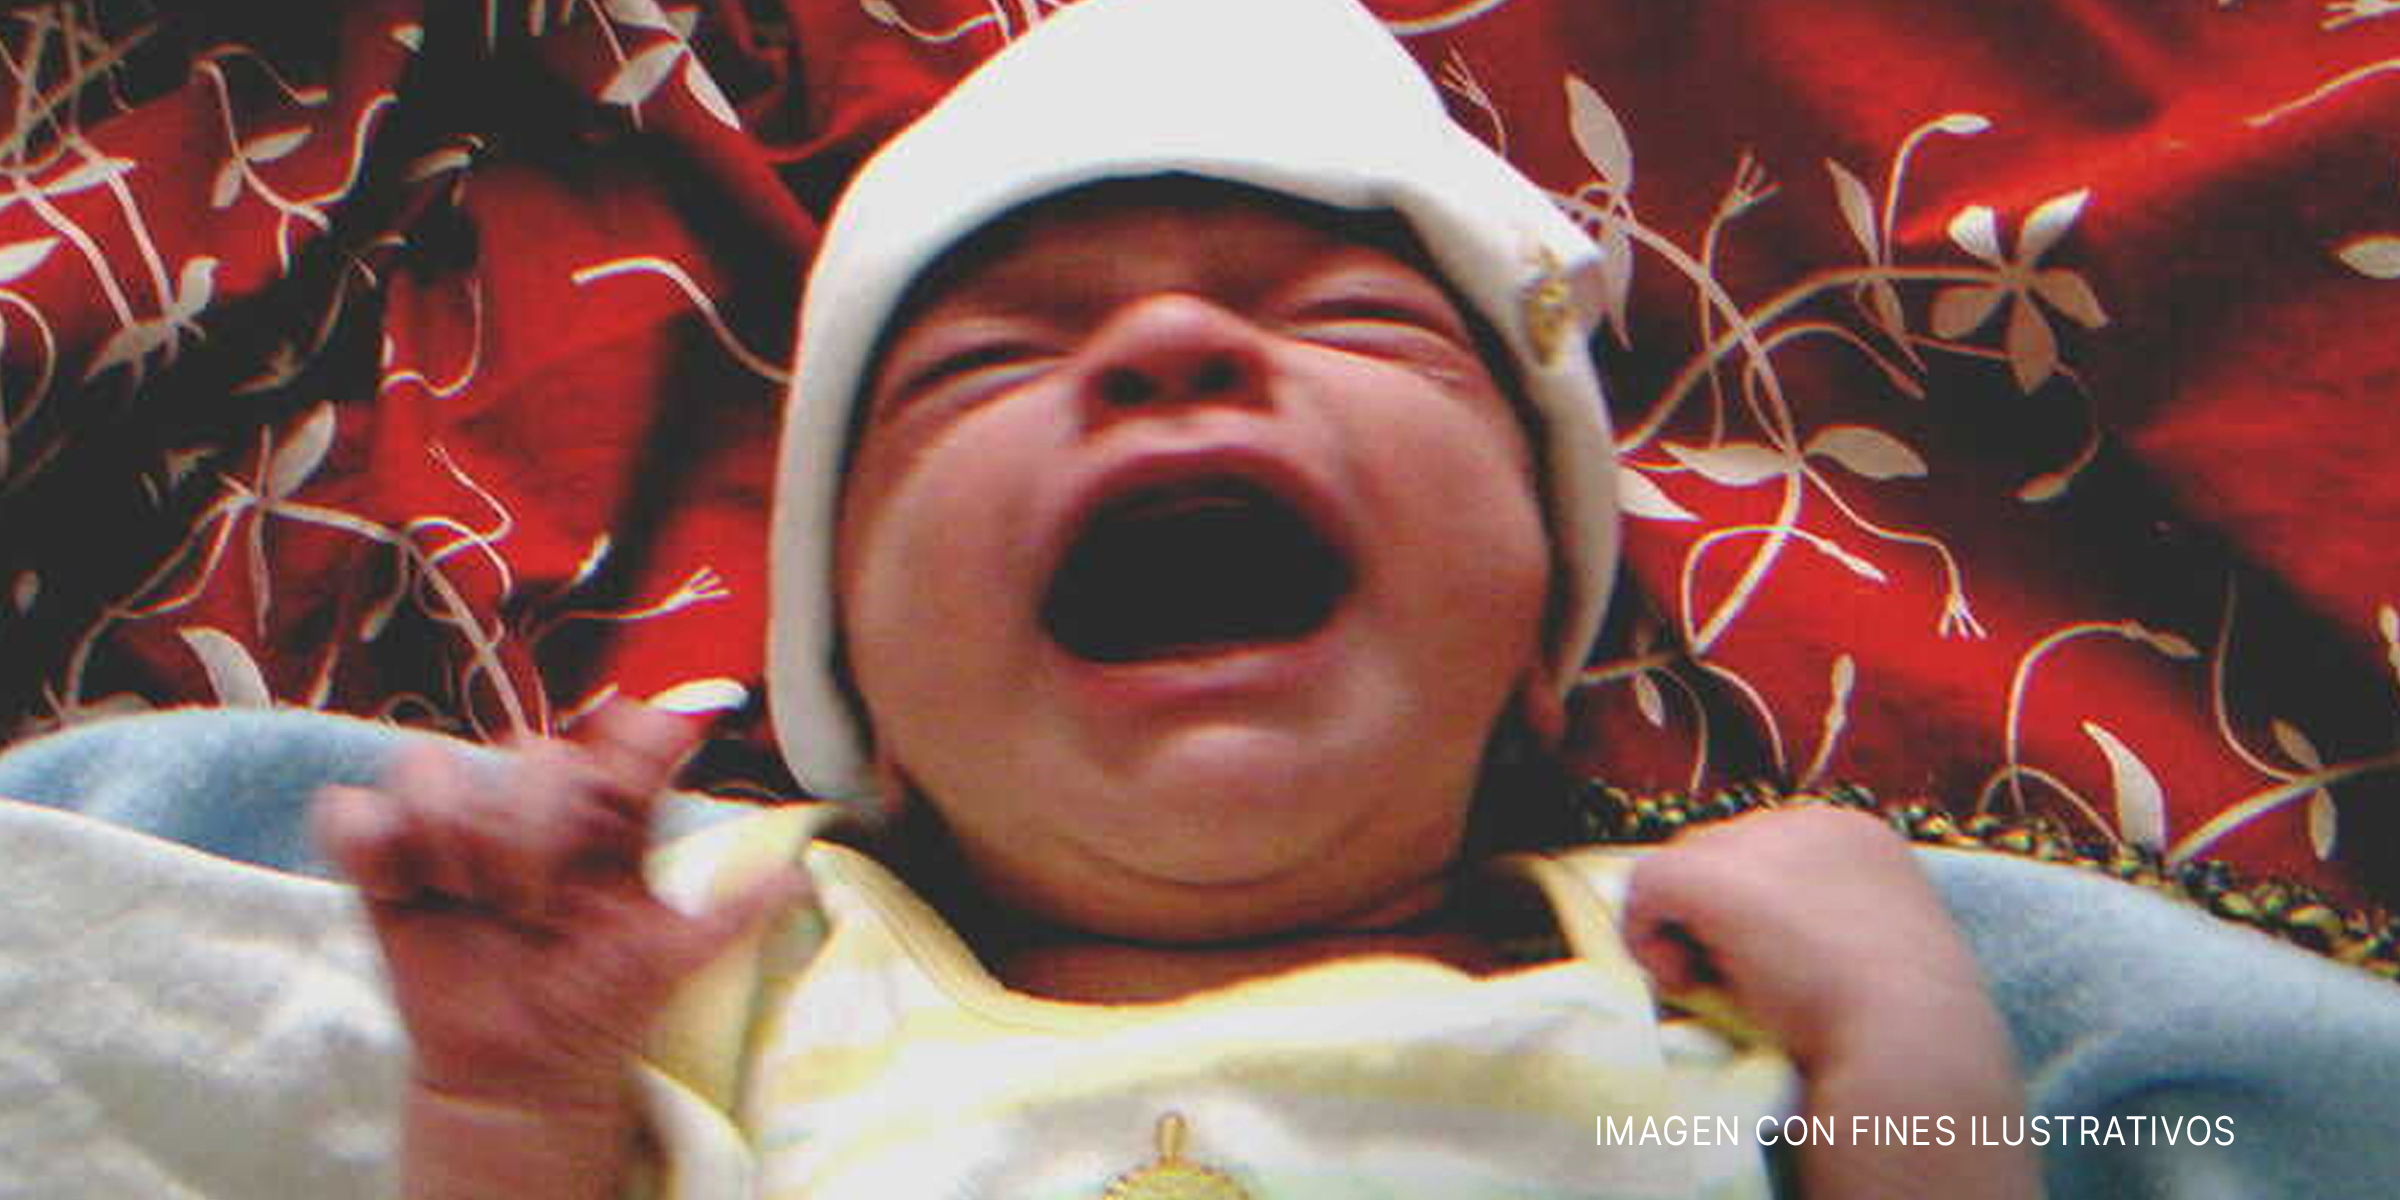 Un recién nacido llorando. | Foto: Flickr.com/rabble (CC BY-SA 2.0)